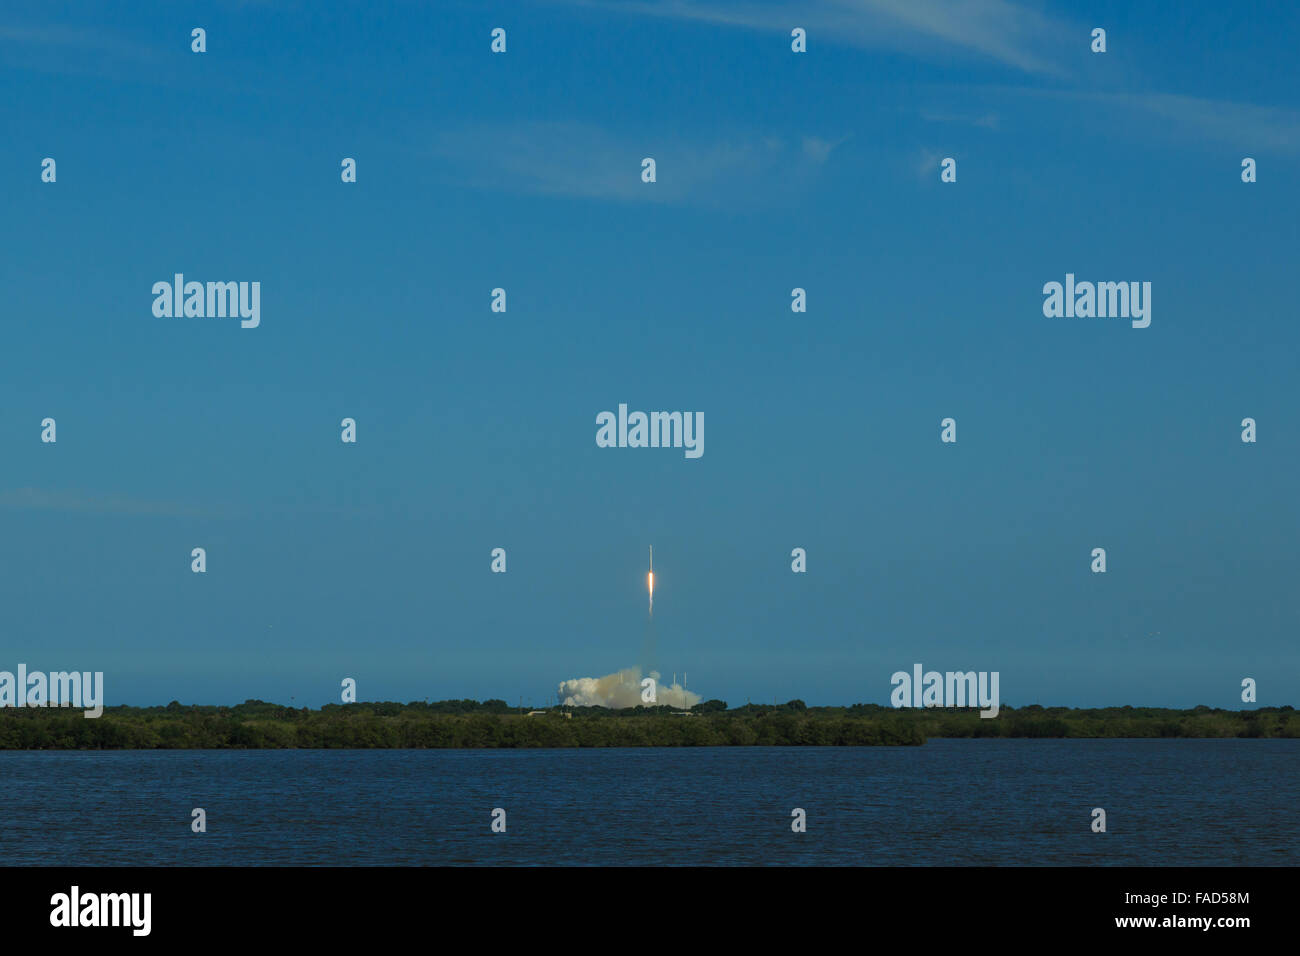 Una fotografía de lanzamiento de un cohete SpaceX Falcon 9 desde Cabo Cañaveral en Florida, Estados Unidos. Foto de stock